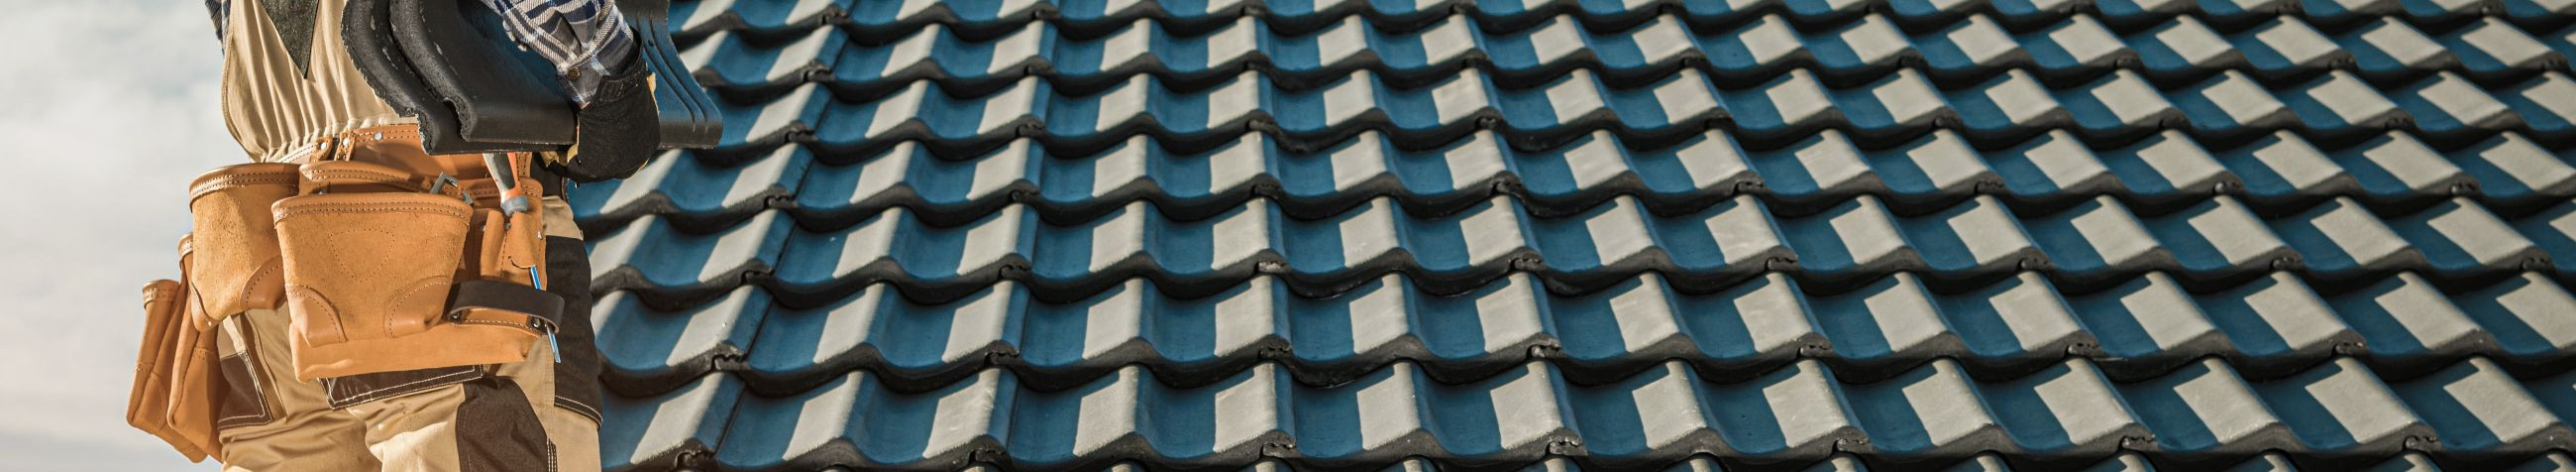 Spetsialiseerume lamekatuste ja viilkatuste ehitusele ning remondile, kasutades kaasaegseid materjale ja töövahendeid, et tagada kvaliteetne katuseteenus aastaringselt.